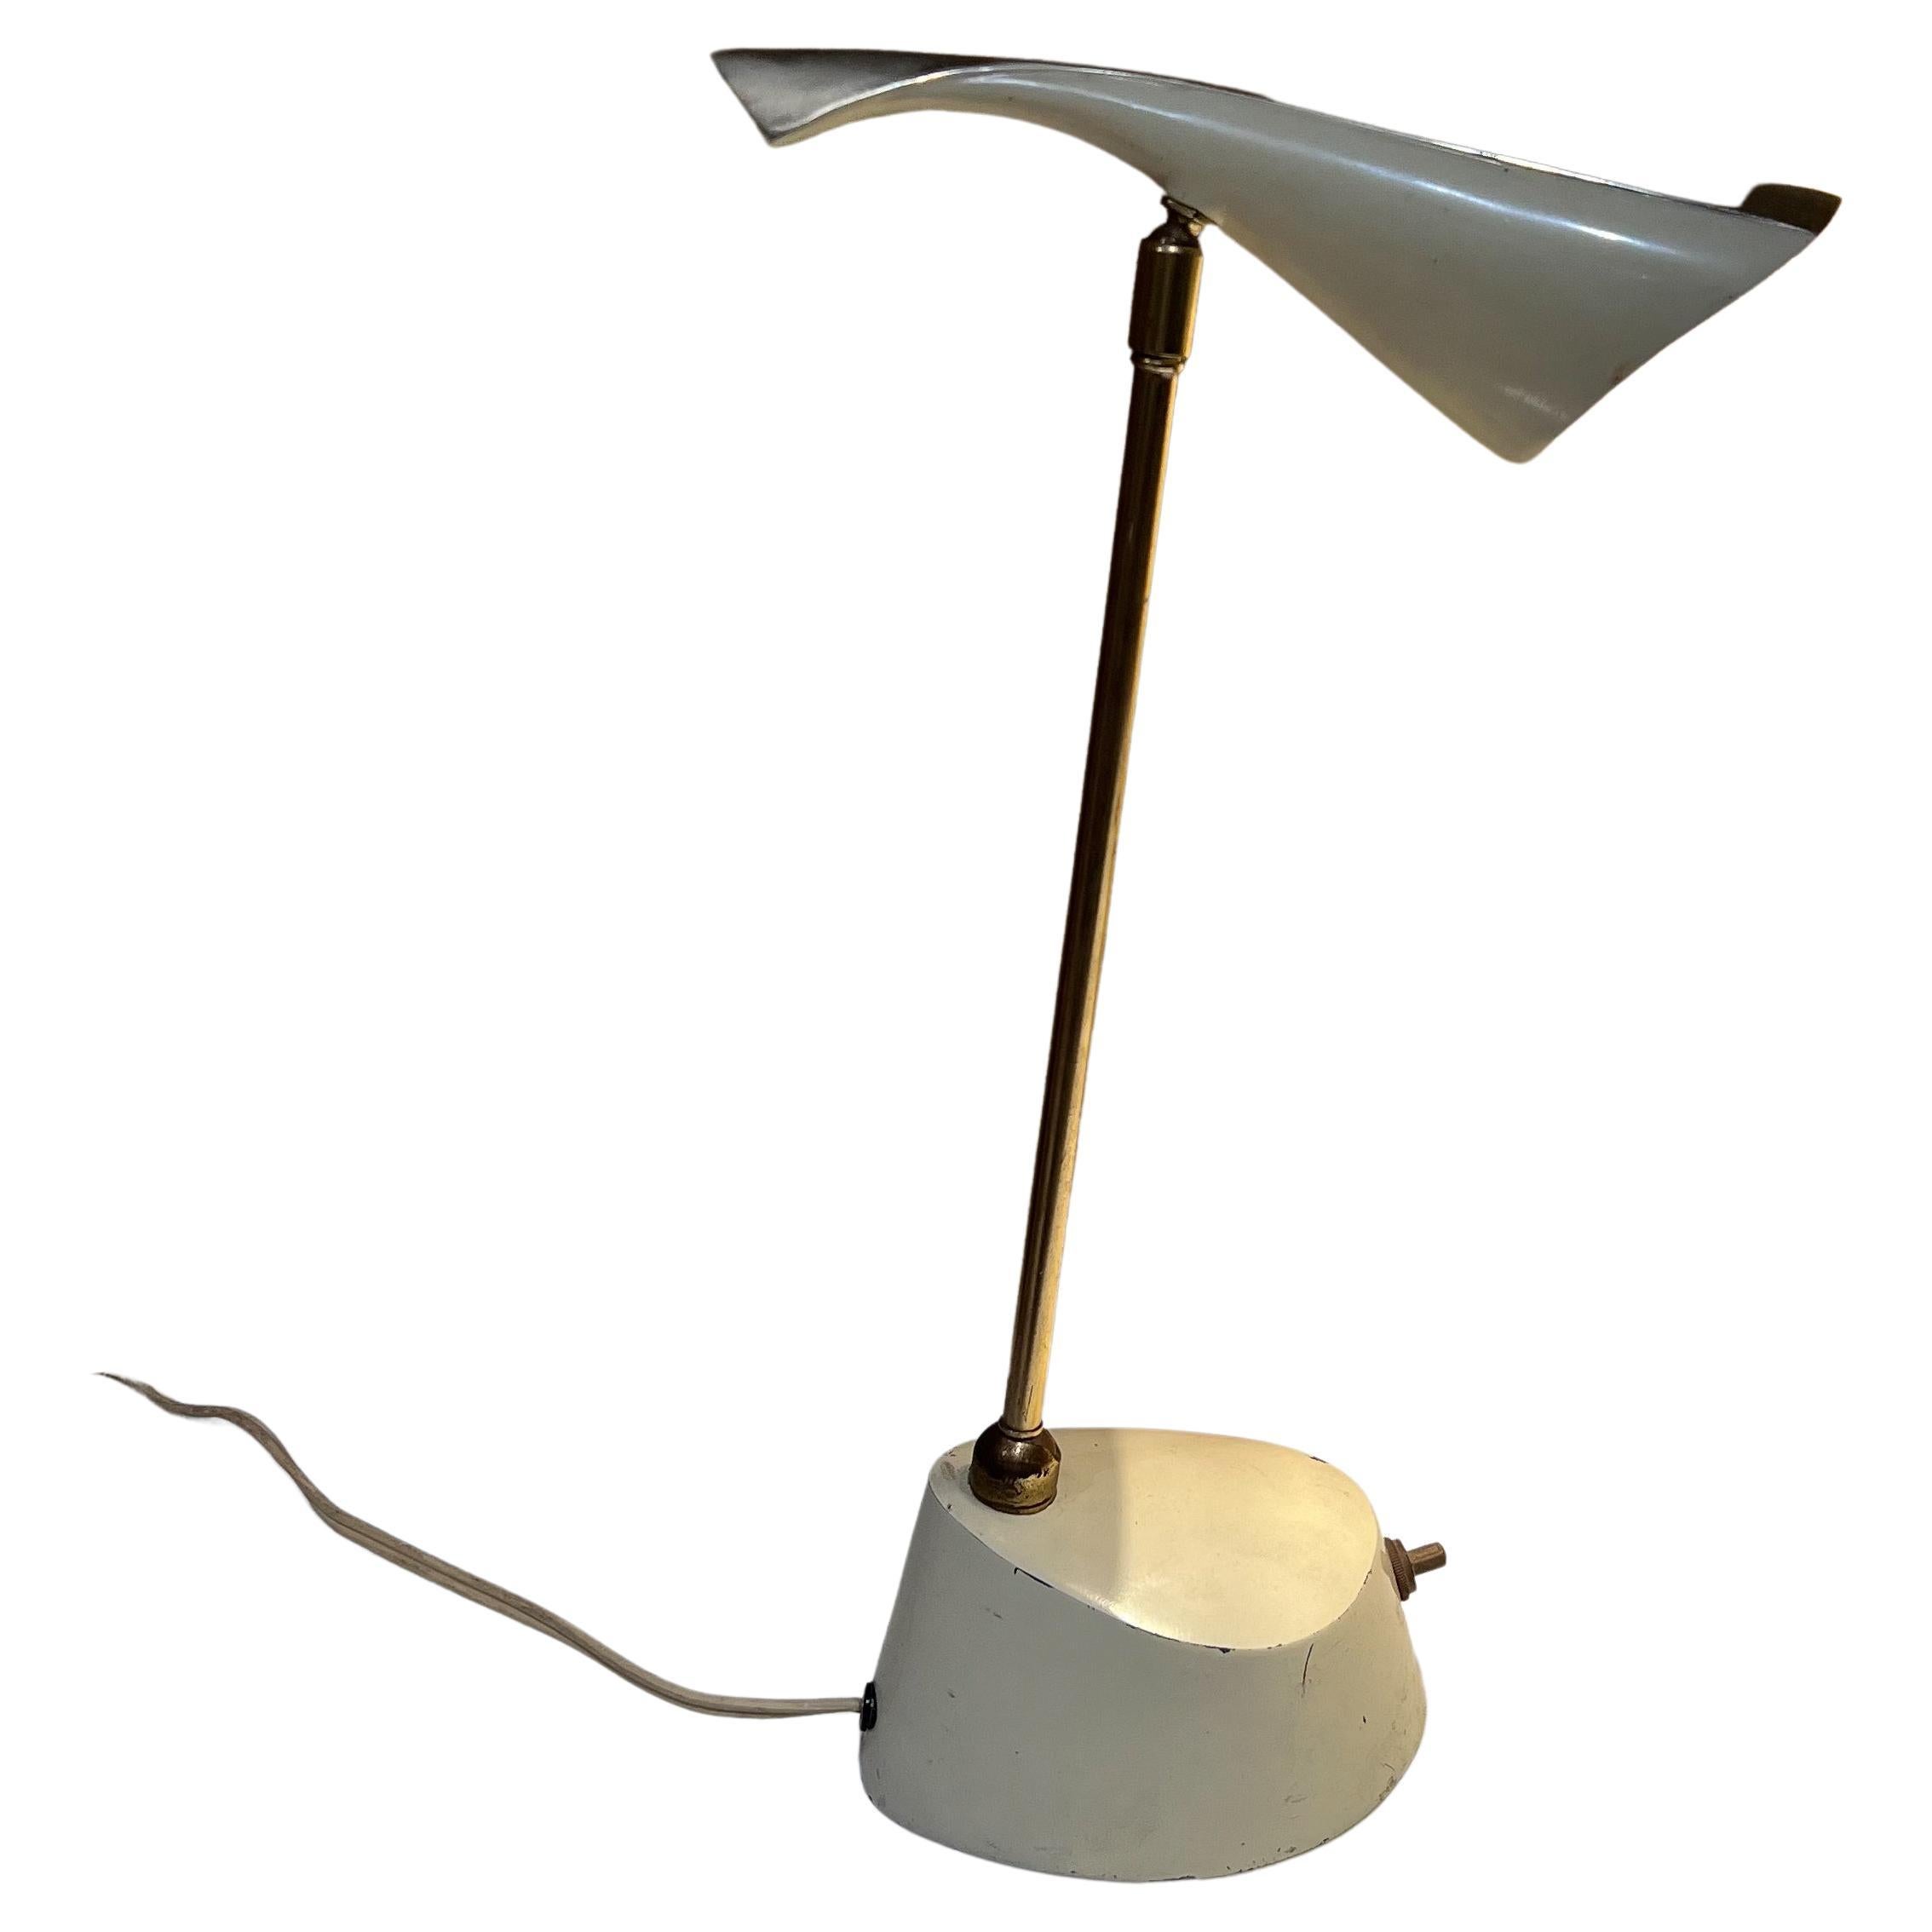 Lampe de bureau
1950 Design/One lampe de bureau lampe de travail classique sculpturale design du milieu du siècle.
Joli laurier moderne en laiton et métal avec abat-jour réglable en forme de cône pivotant, années 1950
Mesures : 13 de haut x 3,75